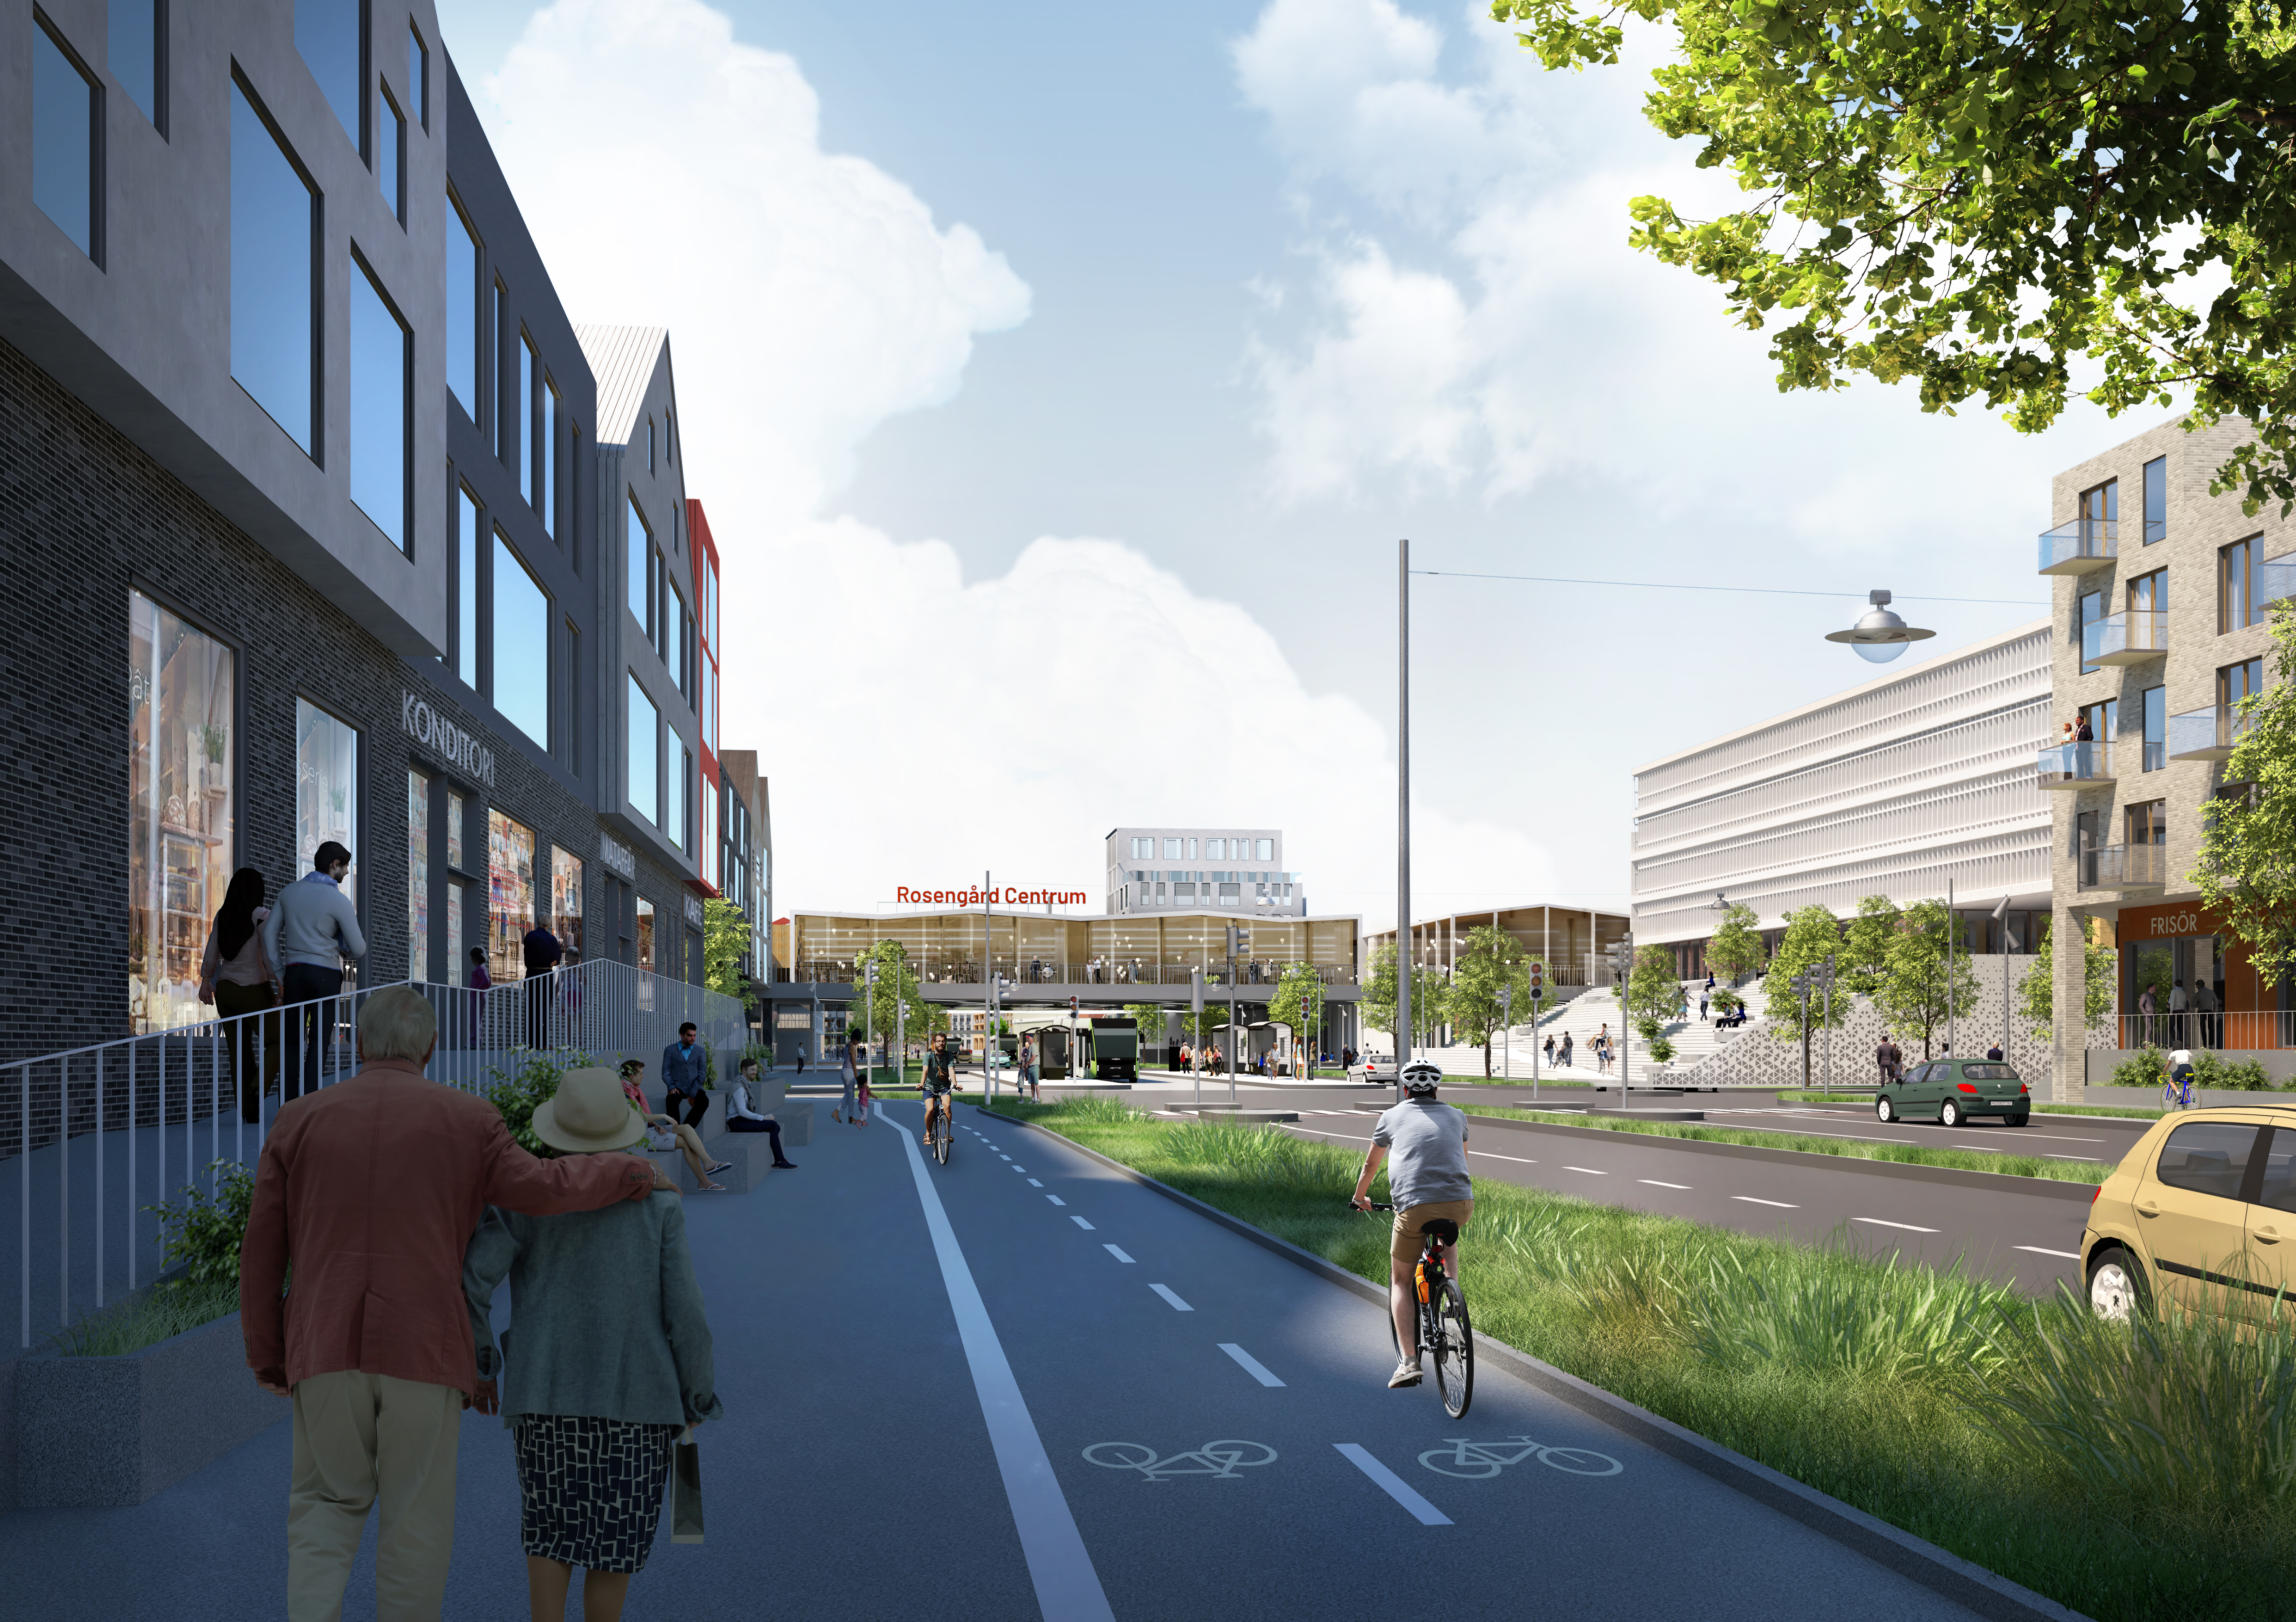 Amiralsgatan byggs om till stadsgata och bostadshus ska kanta den.
Skiss: Mandaworks/Malmö stad